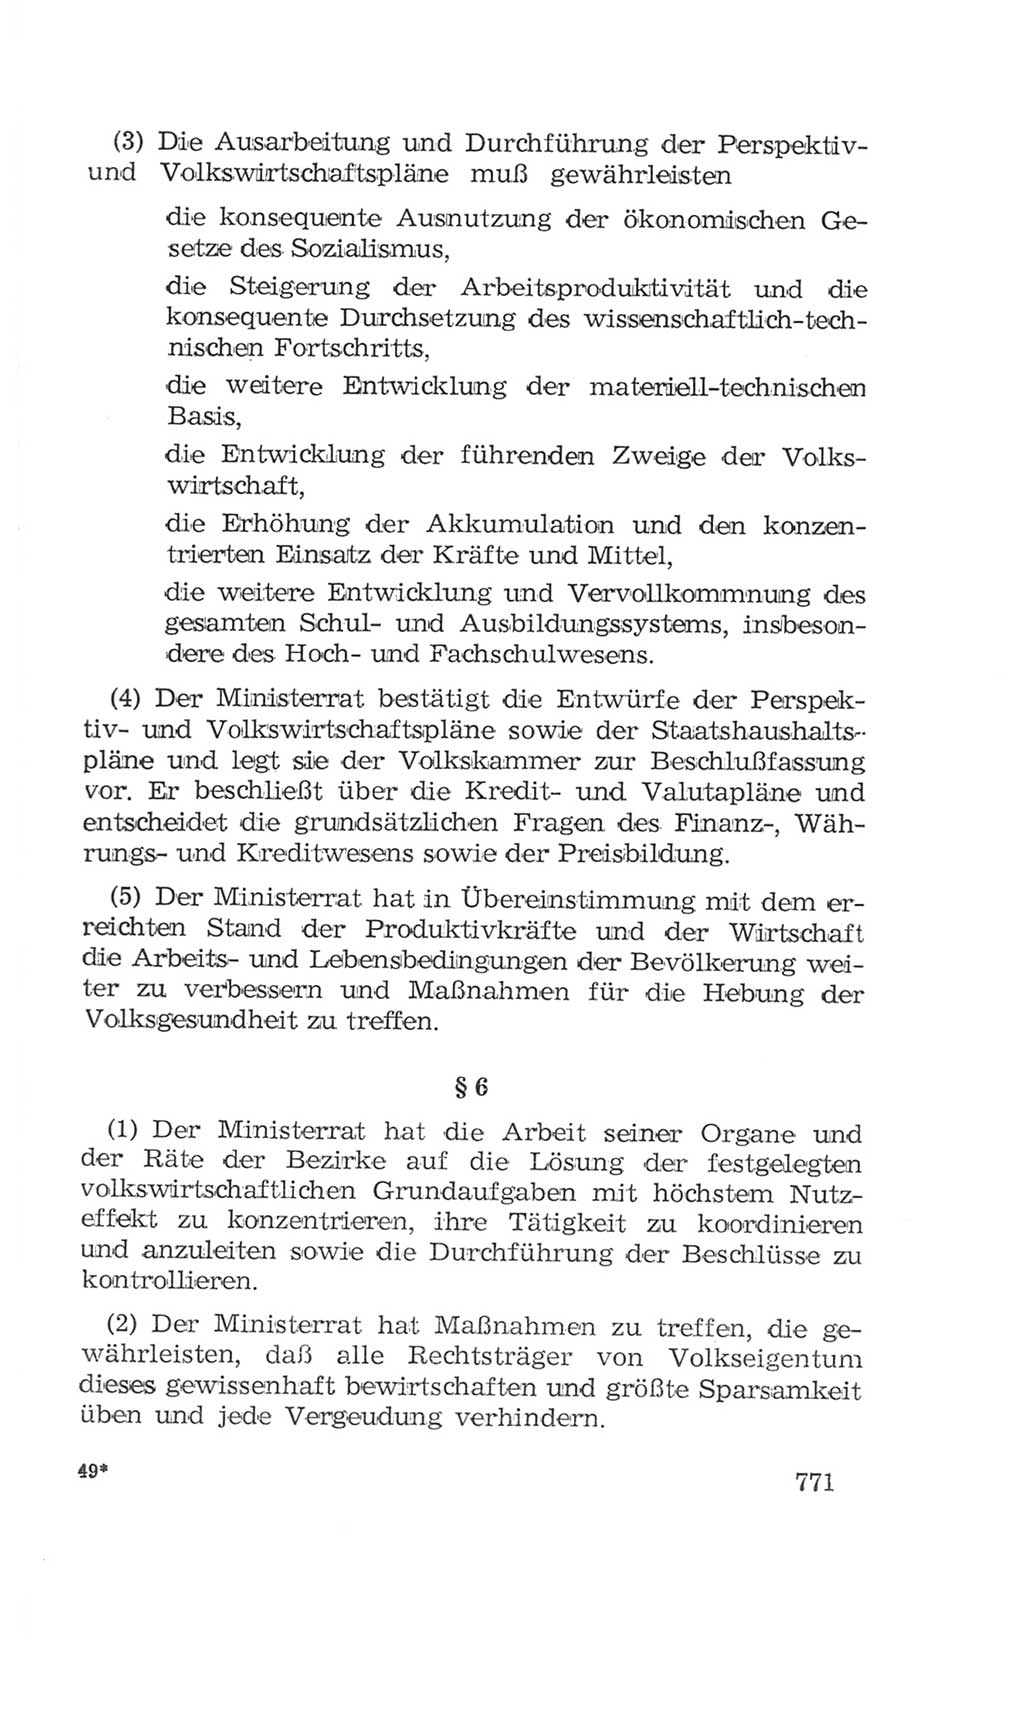 Volkskammer (VK) der Deutschen Demokratischen Republik (DDR), 4. Wahlperiode 1963-1967, Seite 771 (VK. DDR 4. WP. 1963-1967, S. 771)